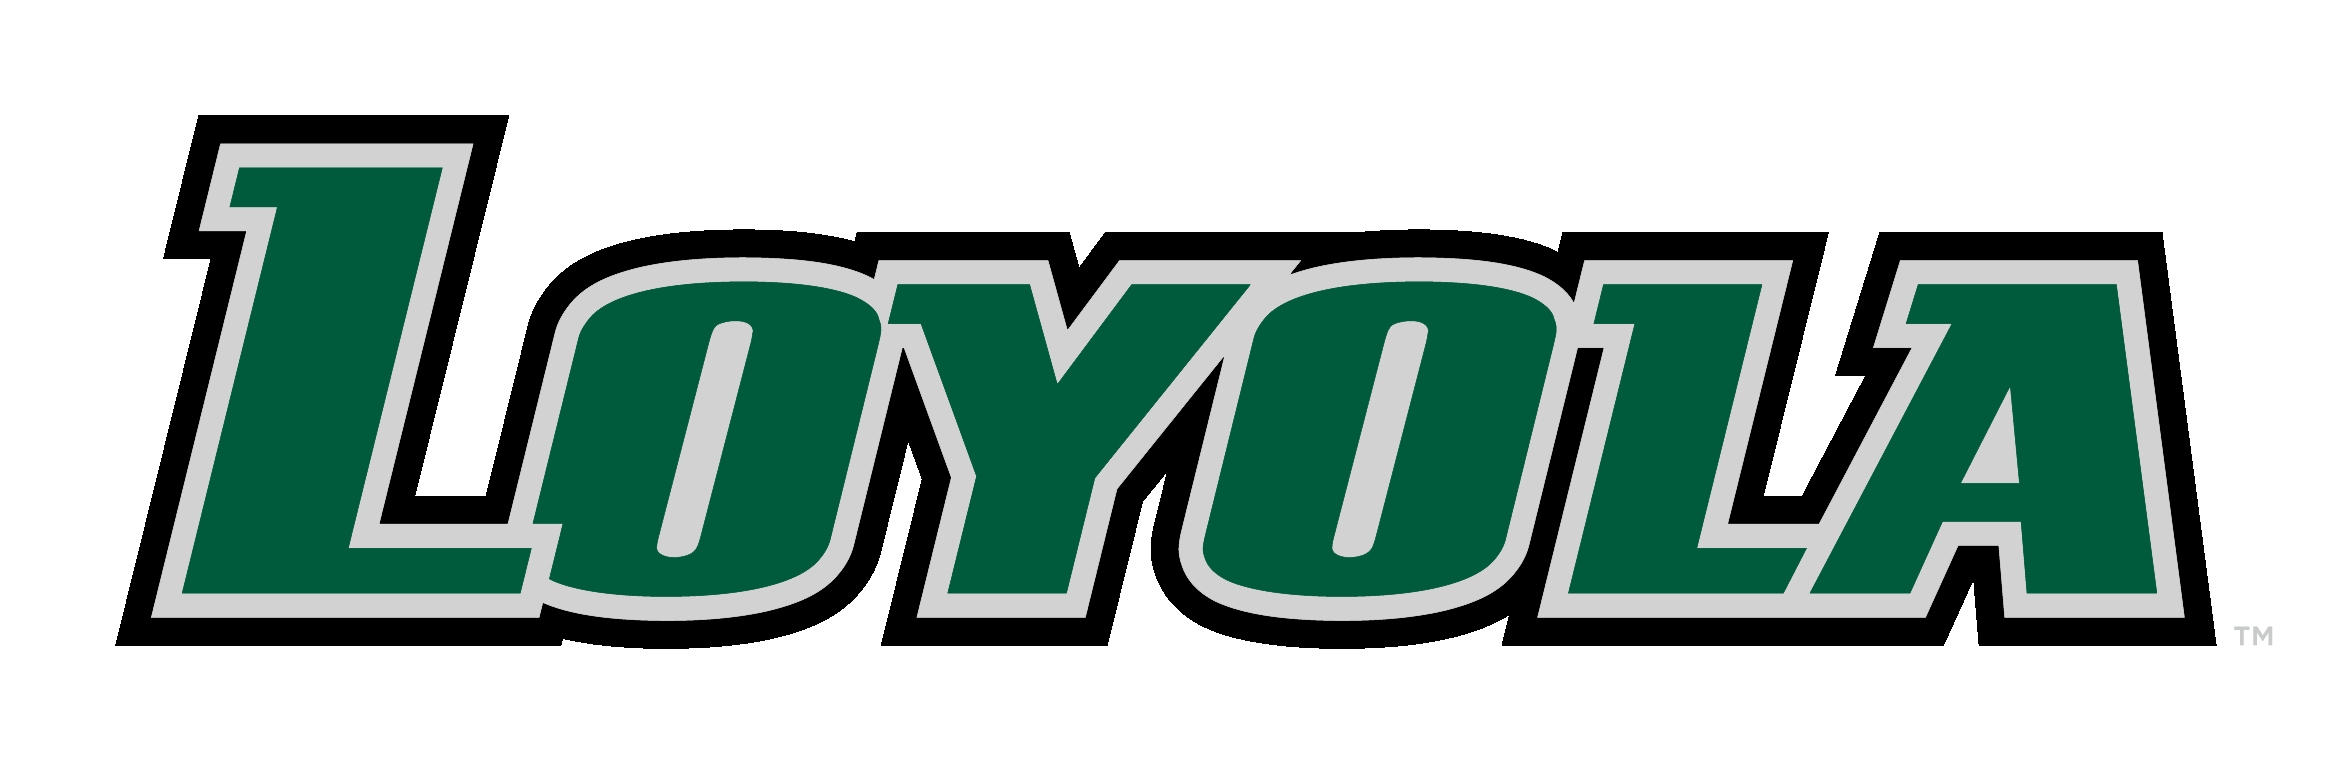 Loyola Logo - Athletic Logos University Maryland Athletics